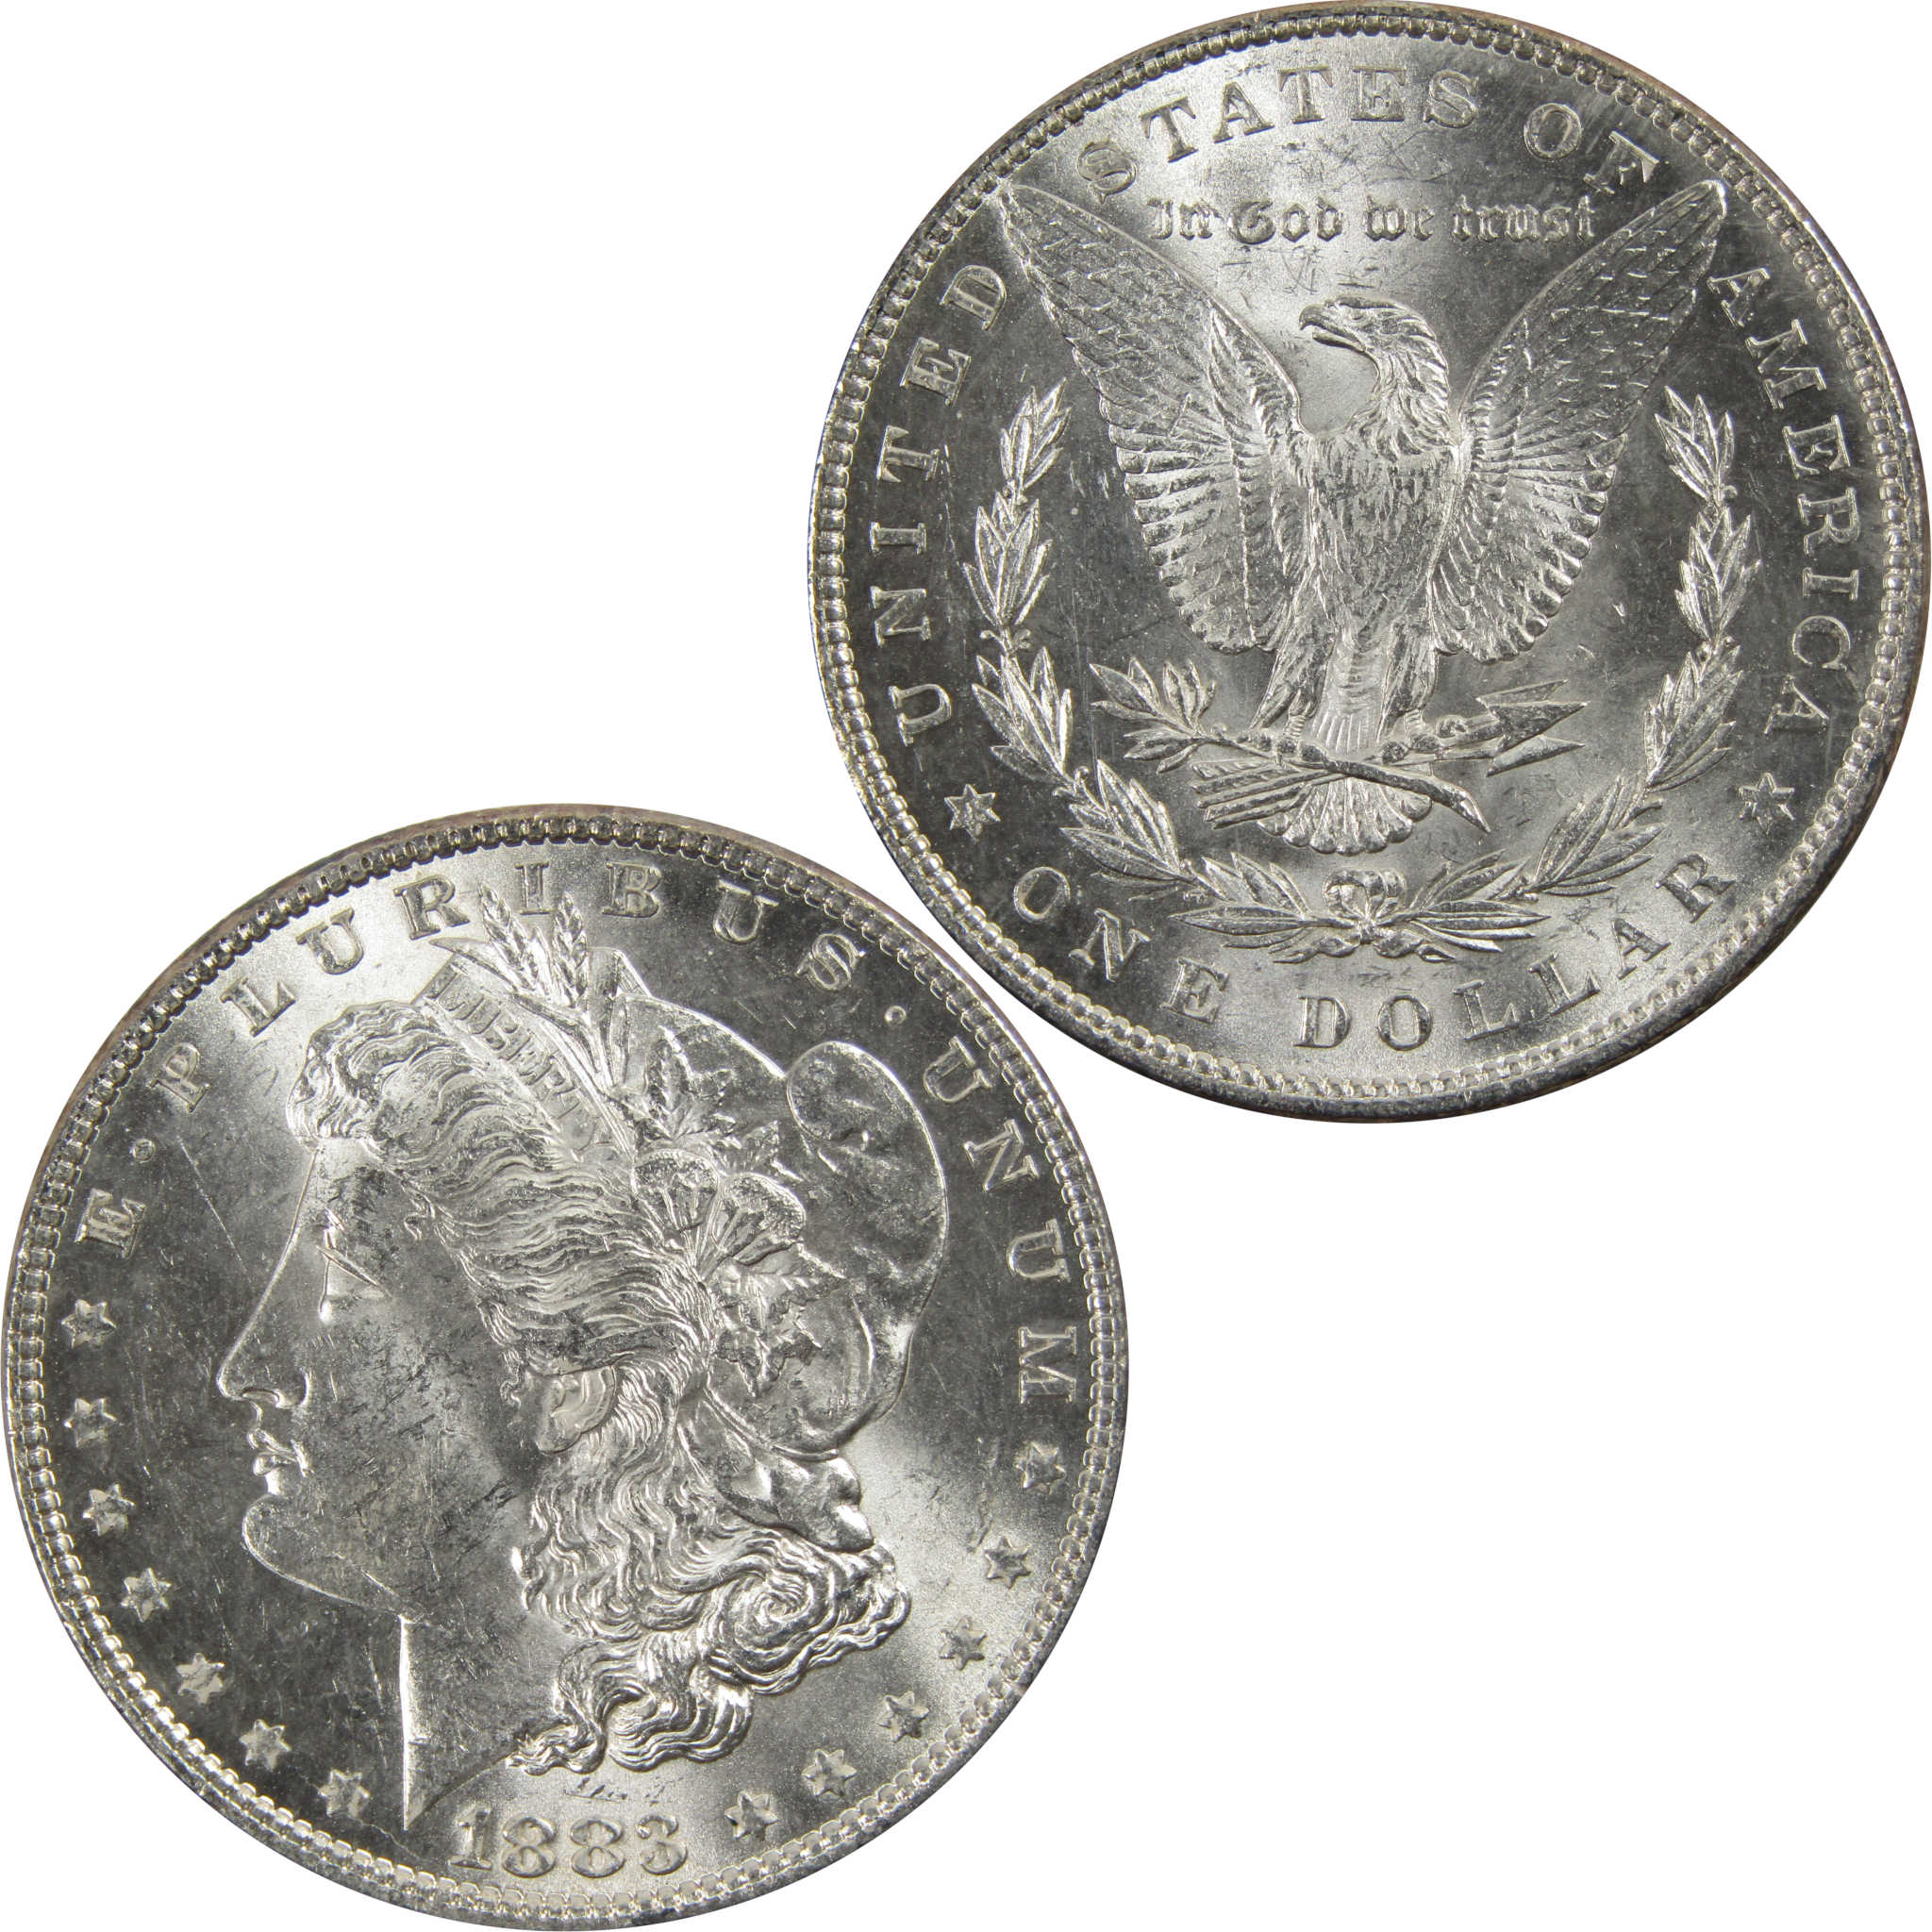 1883 Morgan Dollar BU Uncirculated 90% Silver $1 Coin SKU:I5176 - Morgan coin - Morgan silver dollar - Morgan silver dollar for sale - Profile Coins &amp; Collectibles